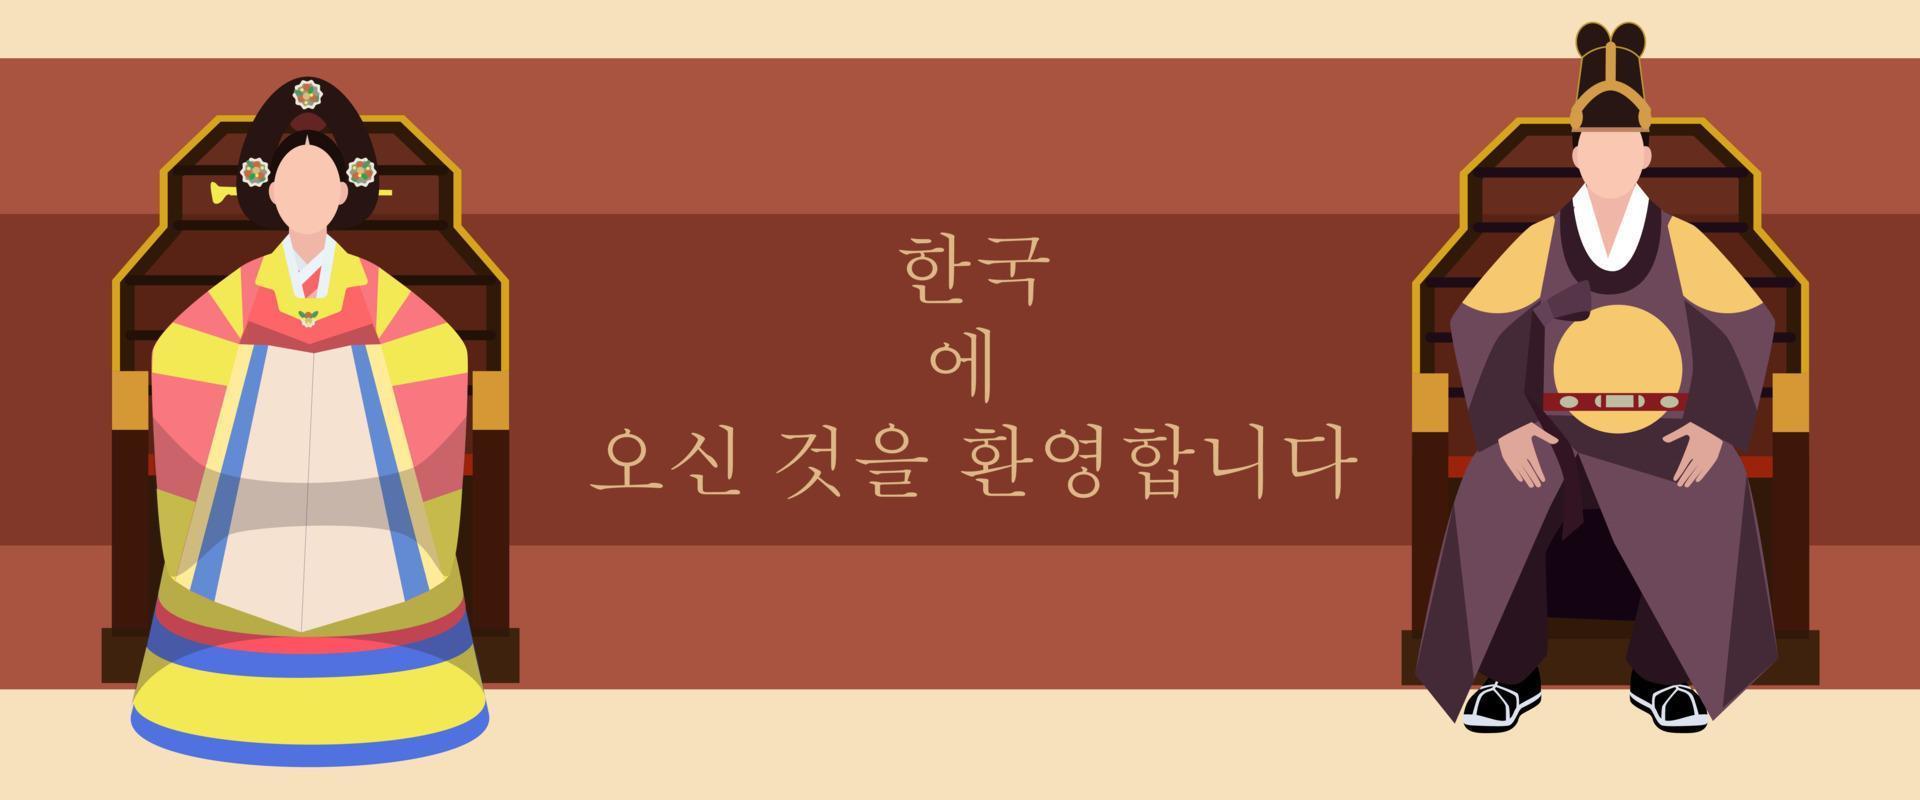 Bienvenue en Corée. les rois en hanbok s'assoient sur le trône et saluent les arrivants. vêtements folkloriques coréens pour kings.vector illustration dans un style design plat. la conception est simple. bannière des rois, dépliant, imprimé. vecteur